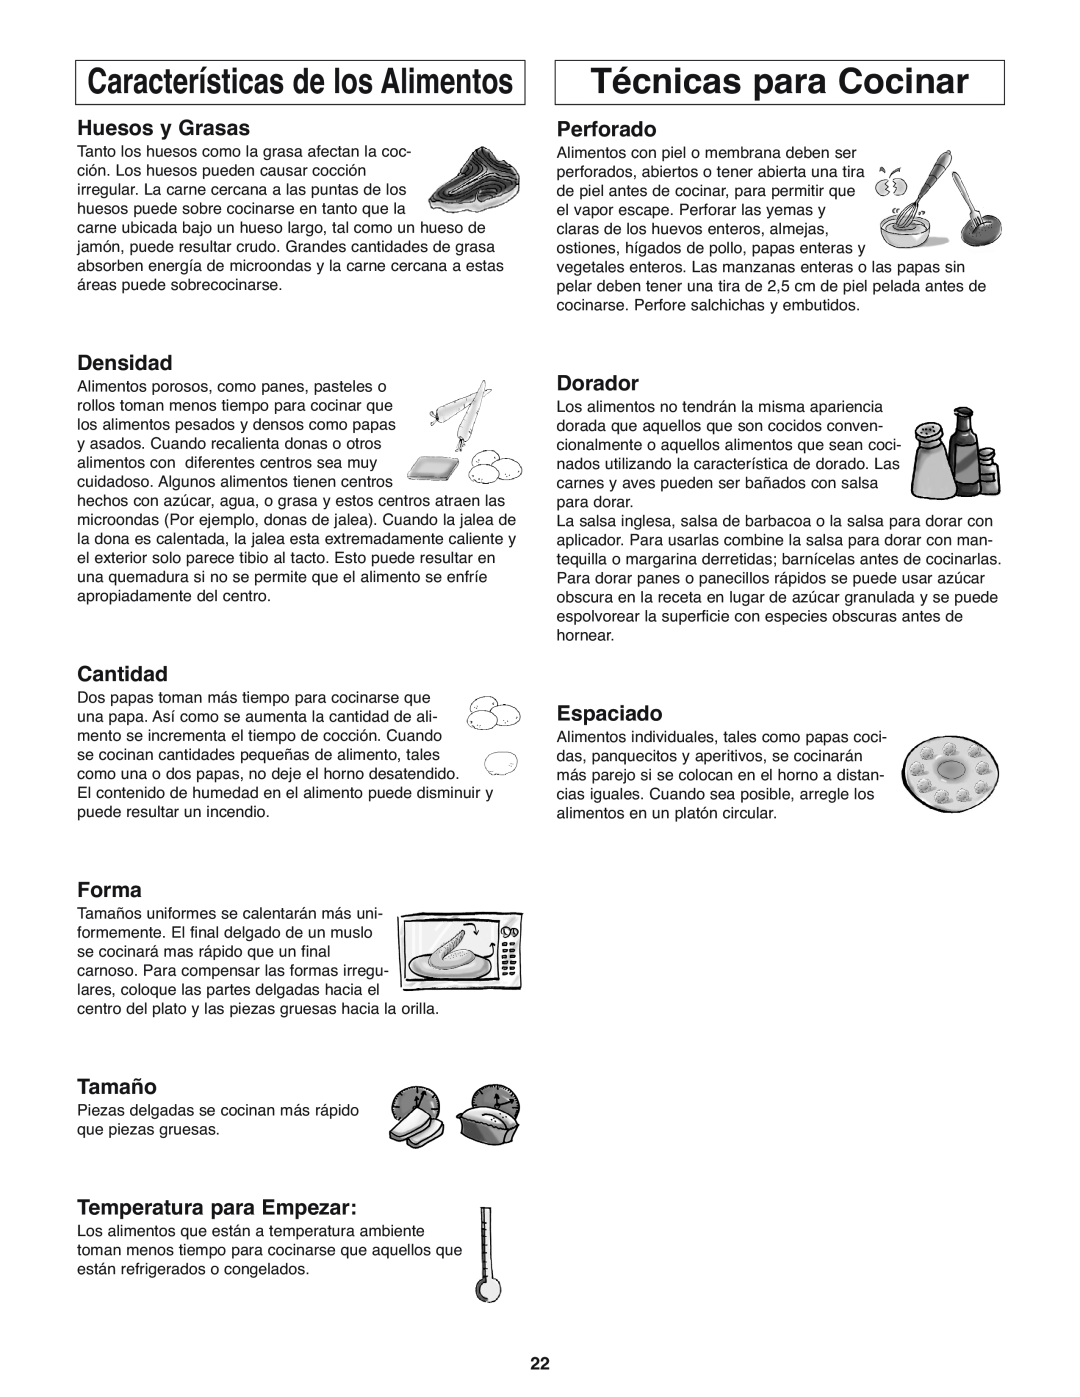 Panasonic NN-H275 Técnicas para Cocinar, Características de los Alimentos, Huesos y Grasas, Perforado, Densidad, Cantidad 